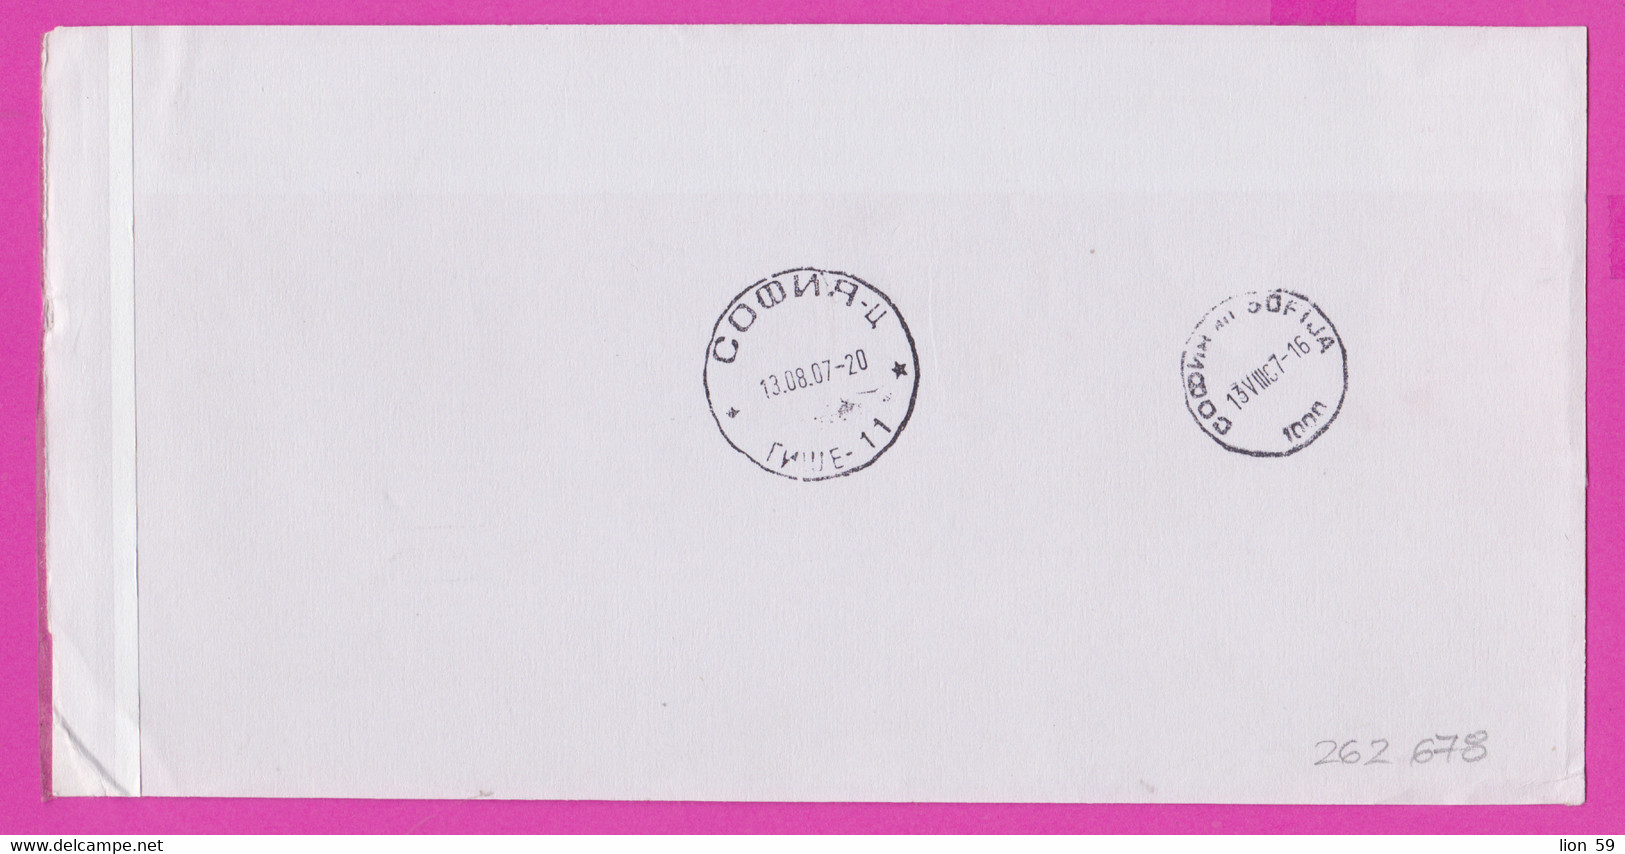 262678 / Form CN 07 Bulgaria 2007 Sofia - Netherlands - AVIS De Réception /de Livraison /de Paiement/ D'inscription - Covers & Documents